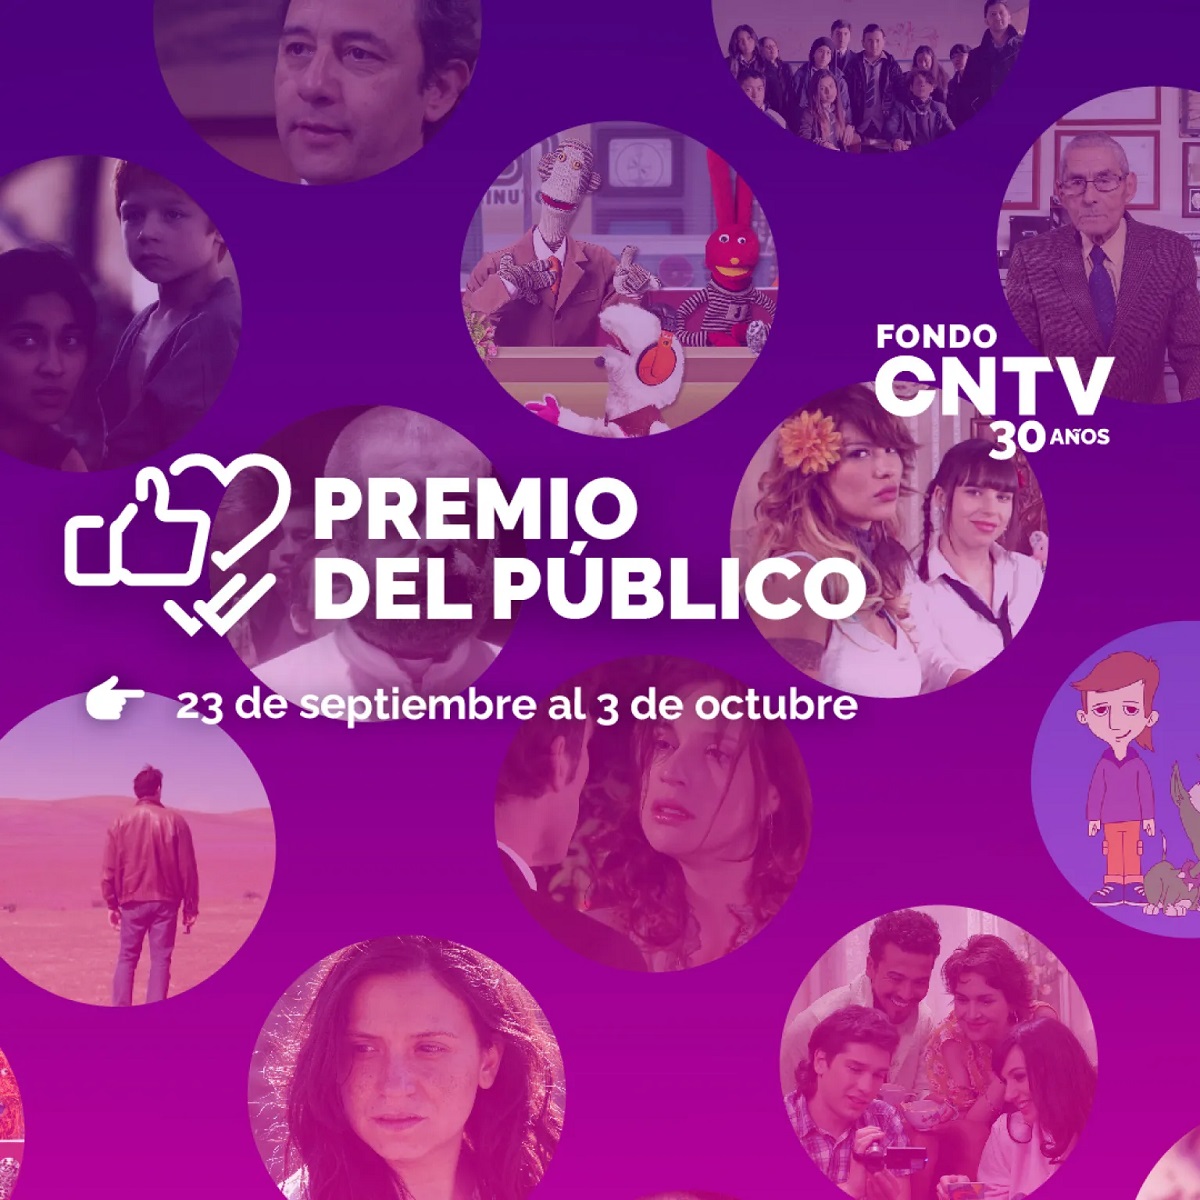 Fondo CNTV celebra 30 años invitando al público a premiar la serie personaje y canción más recordadawebp